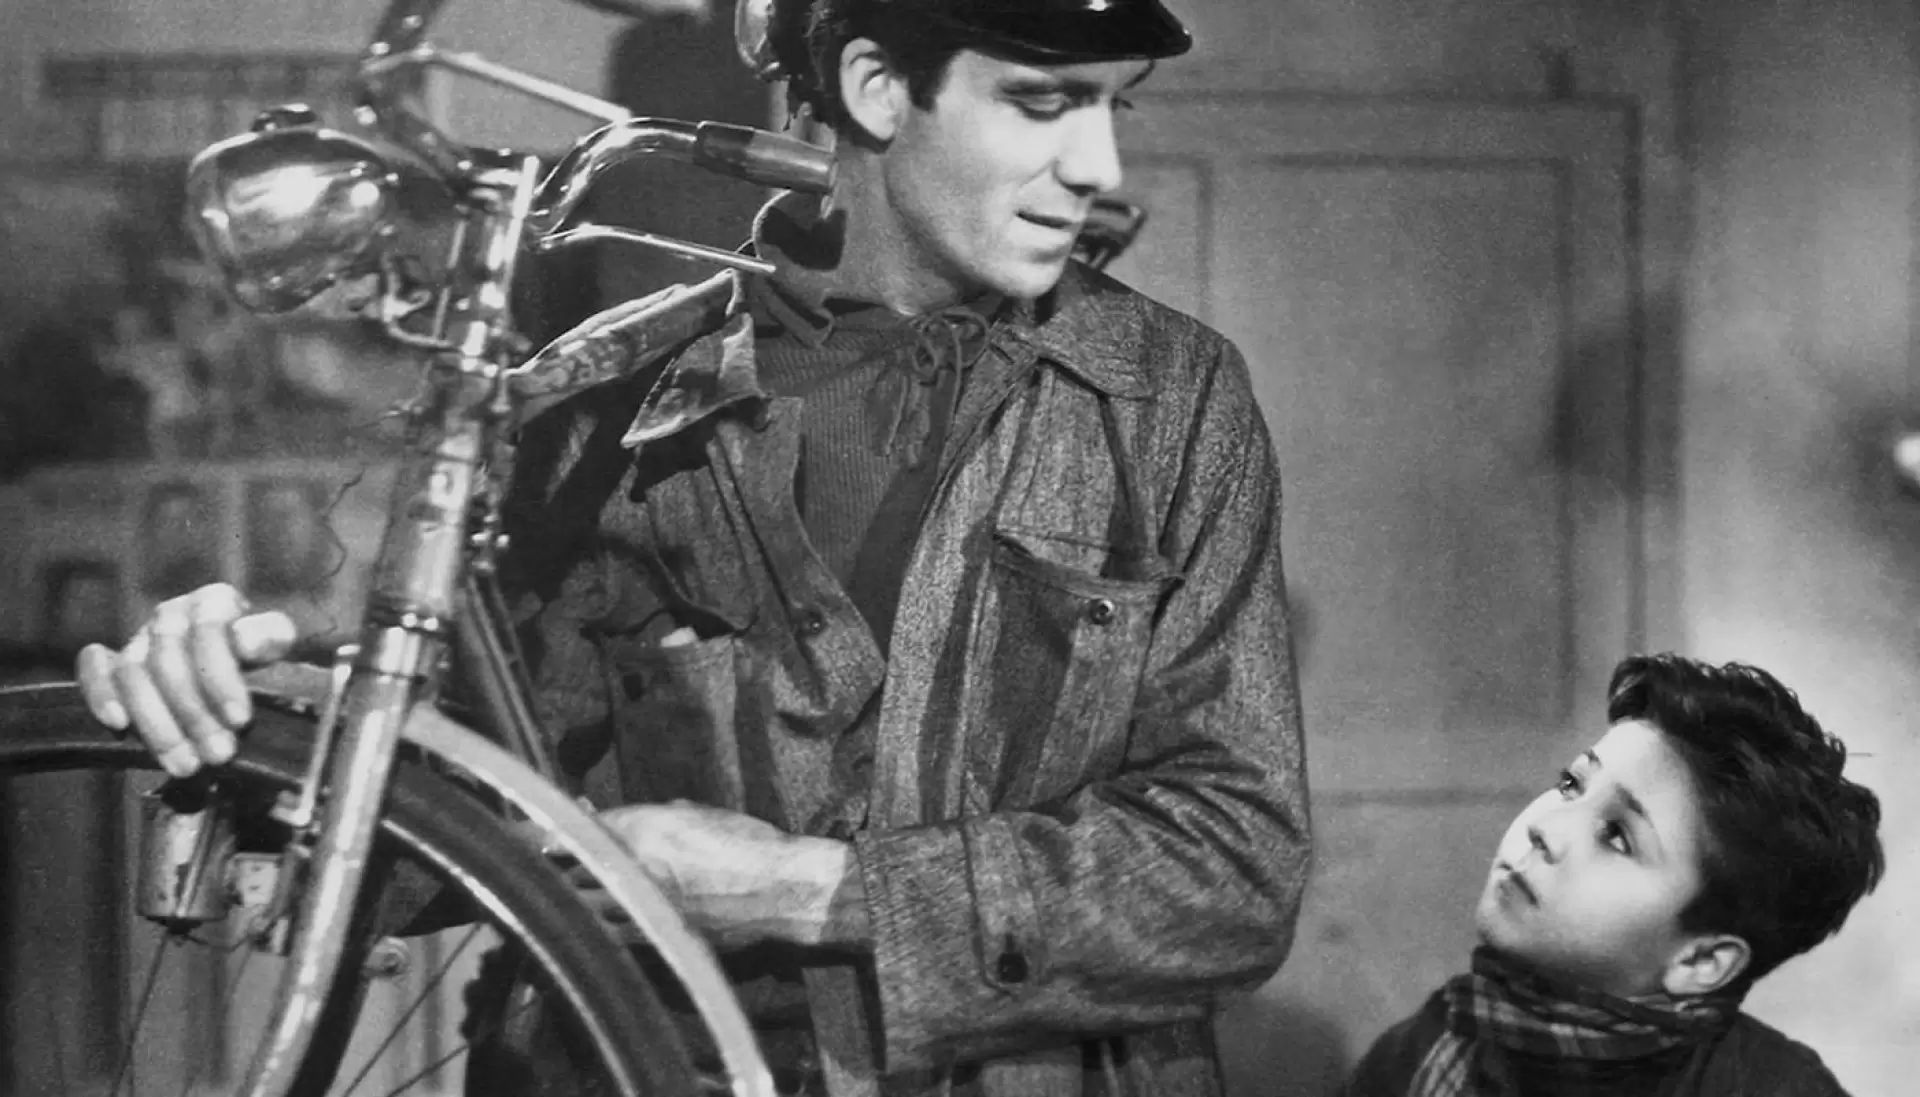 دانلود فیلم Bicycle Thieves 1948 (دزد دوچرخه) با زیرنویس فارسی و تماشای آنلاین